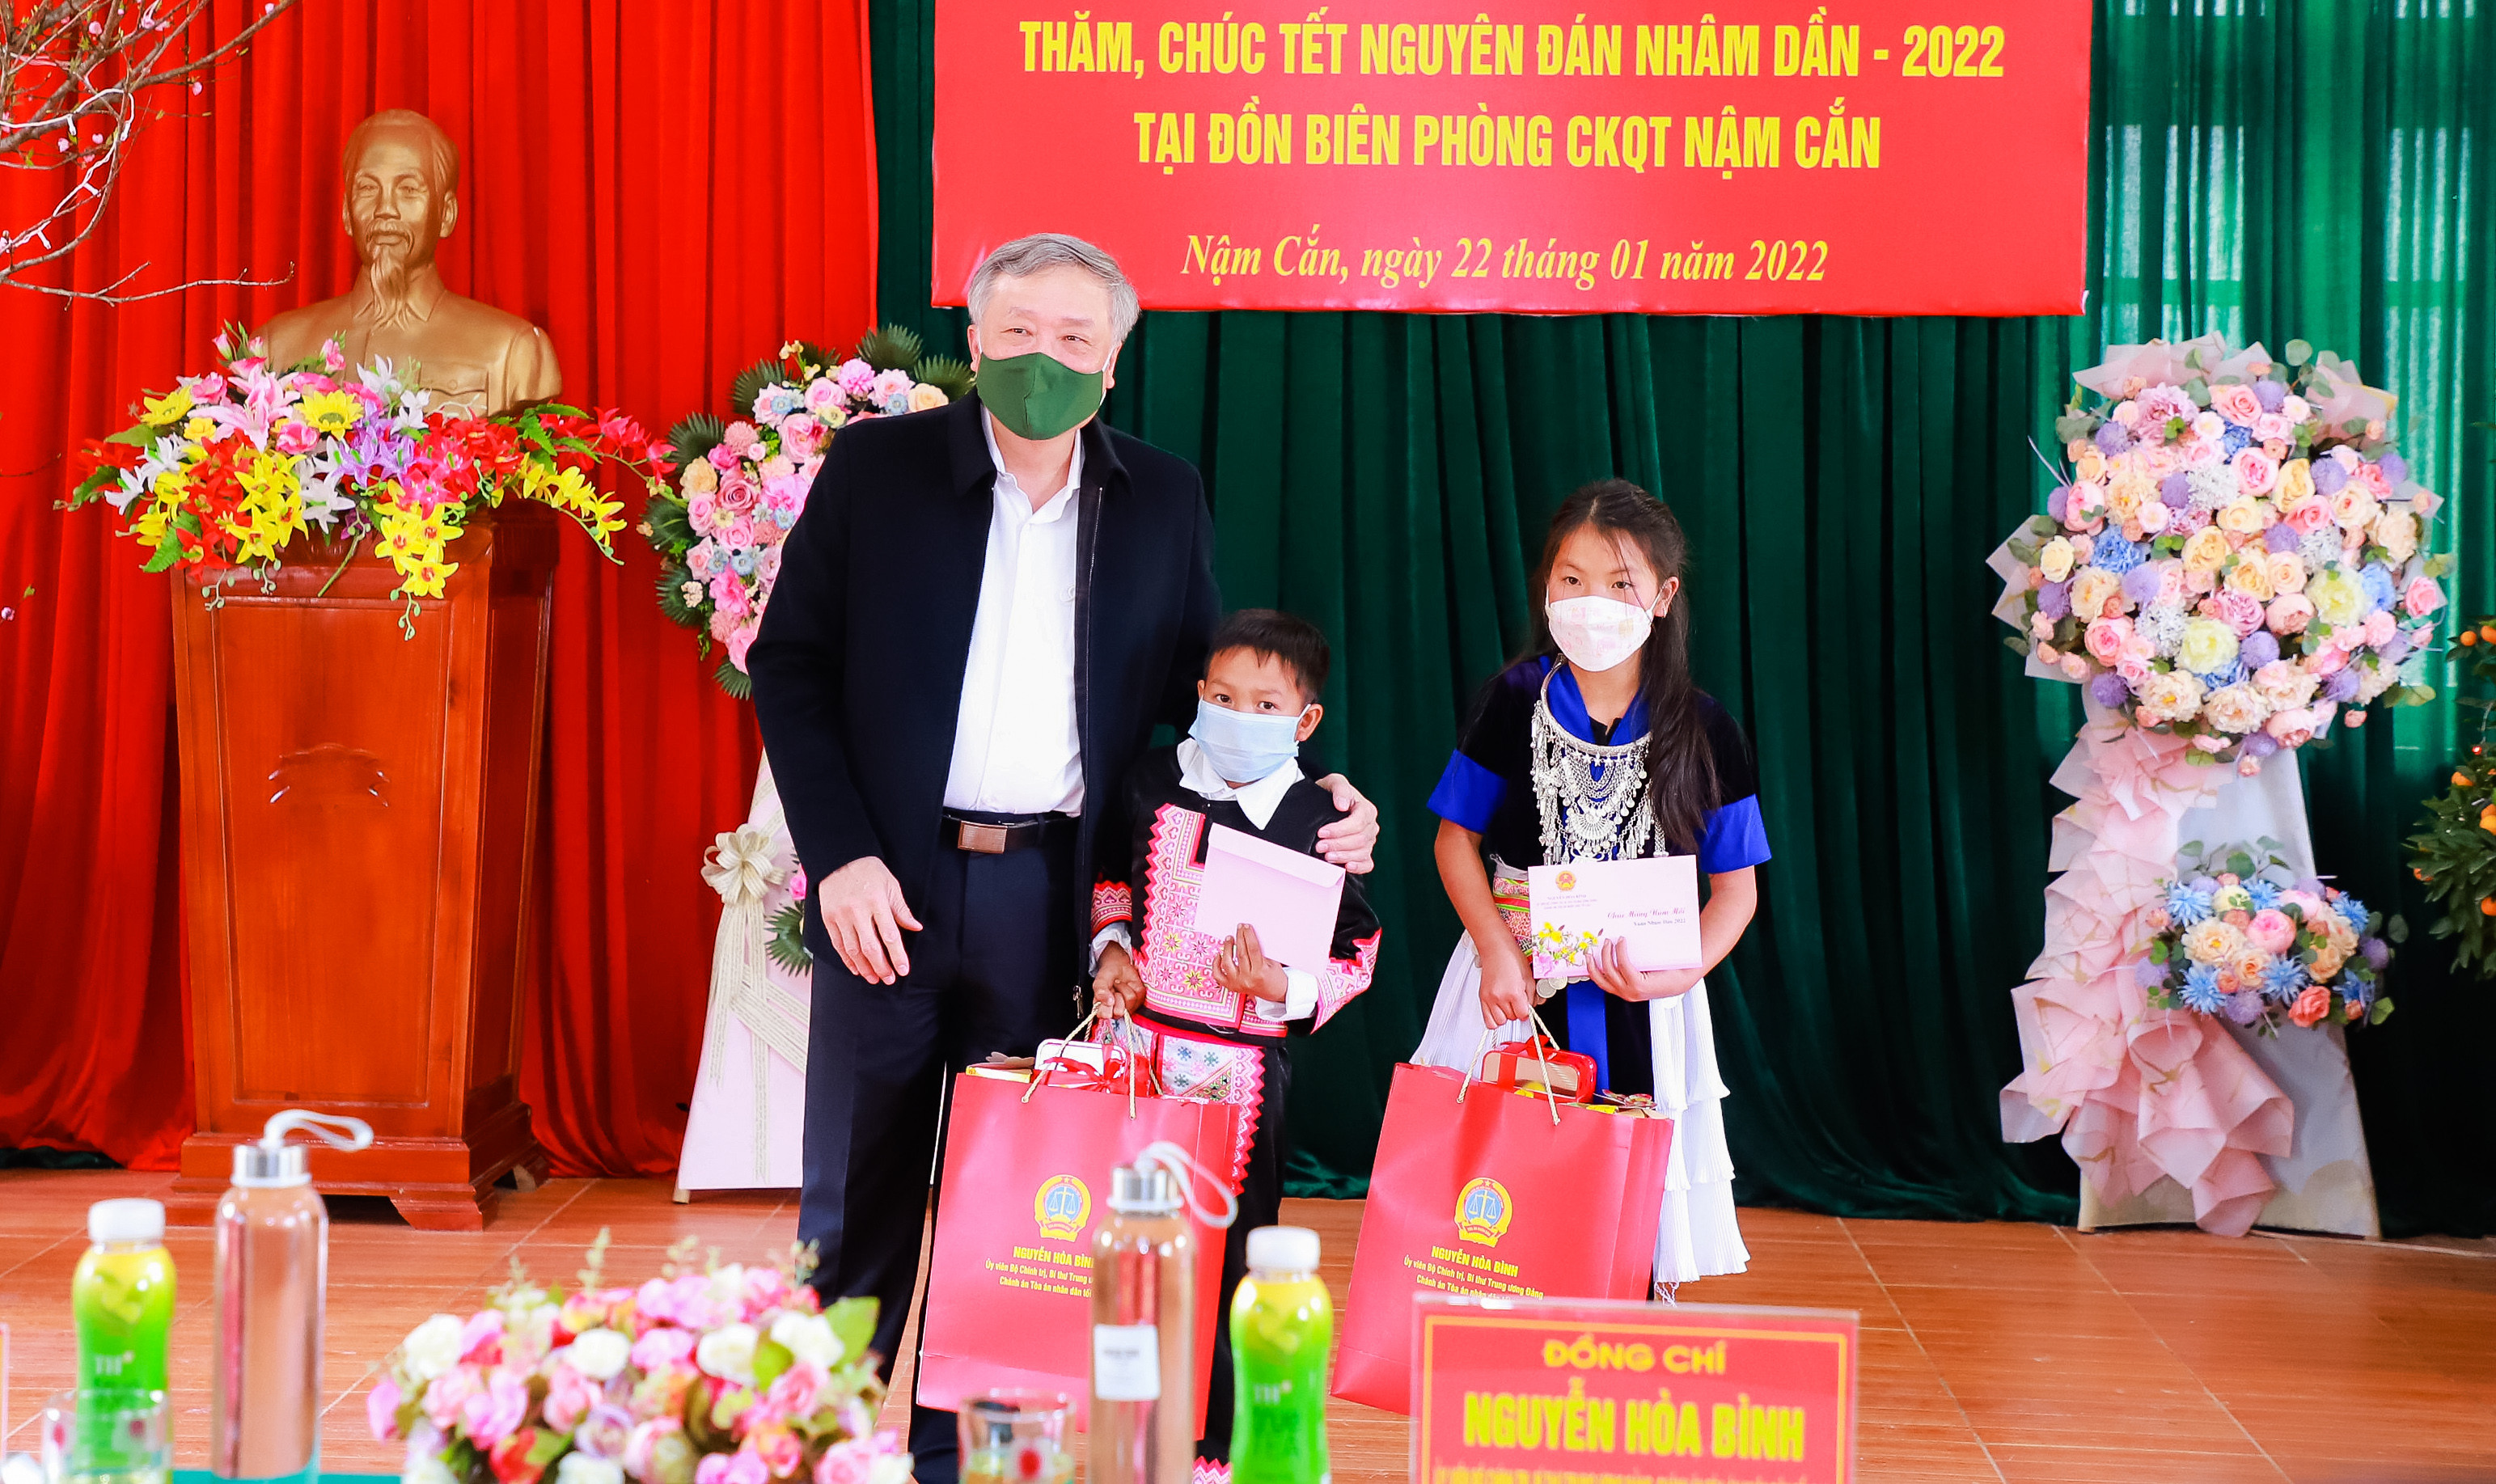 Đồng chí Nguyễn Hòa Bình trao quà cho 2 em nhỏ là con nuôi của Đồn Biên phòng Cửa khẩu quốc tế Nậm Cắn. Ảnh: Thành Duy 